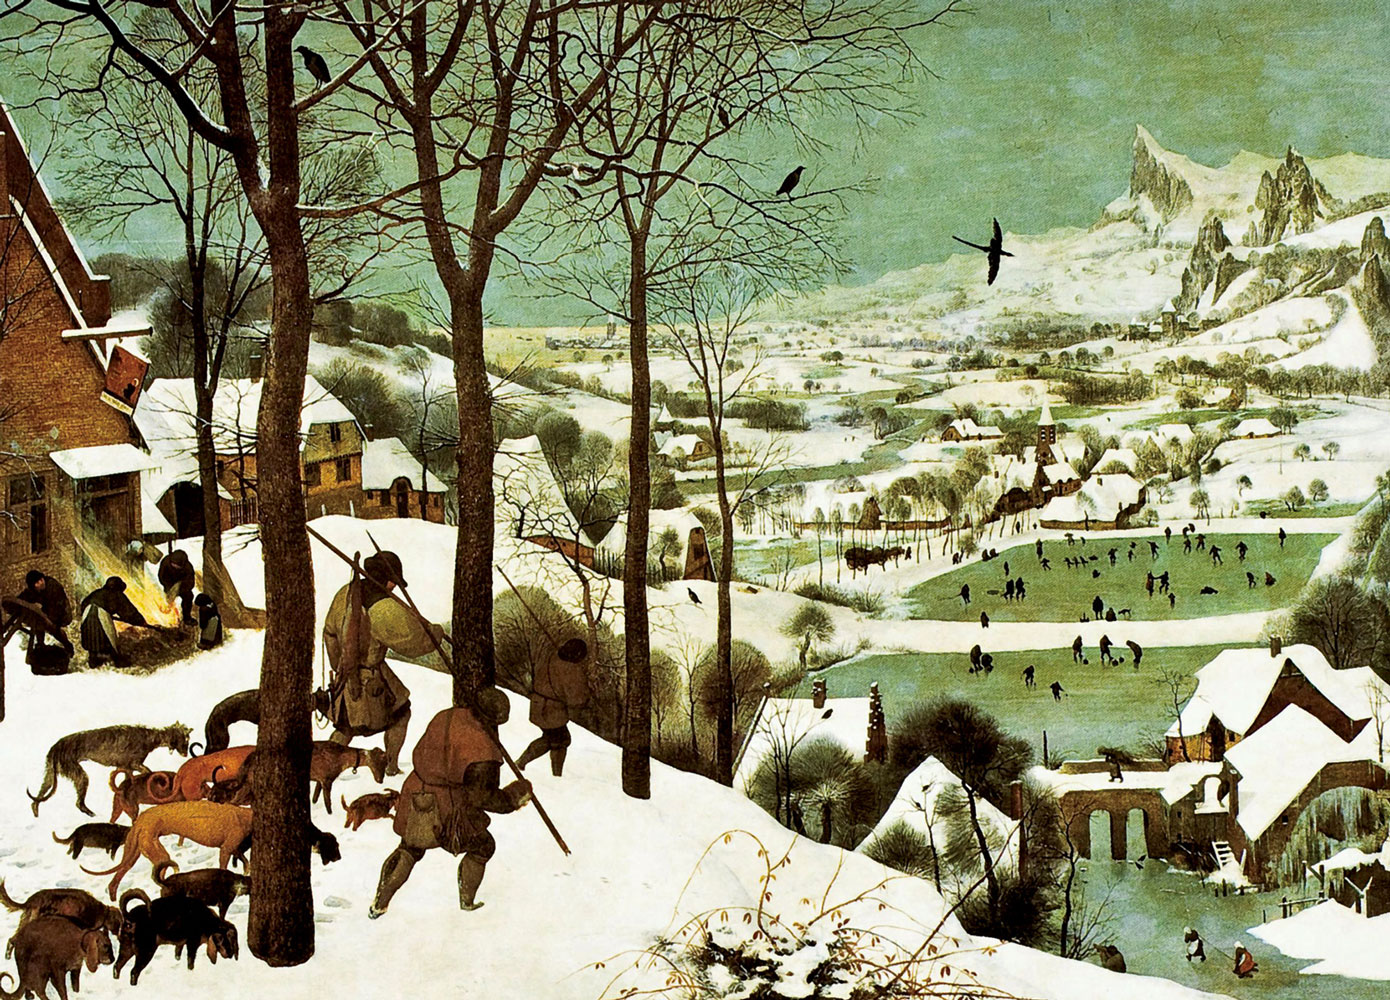 Pieter Bruegel the Elder, Hunters in the Snow, 1565.